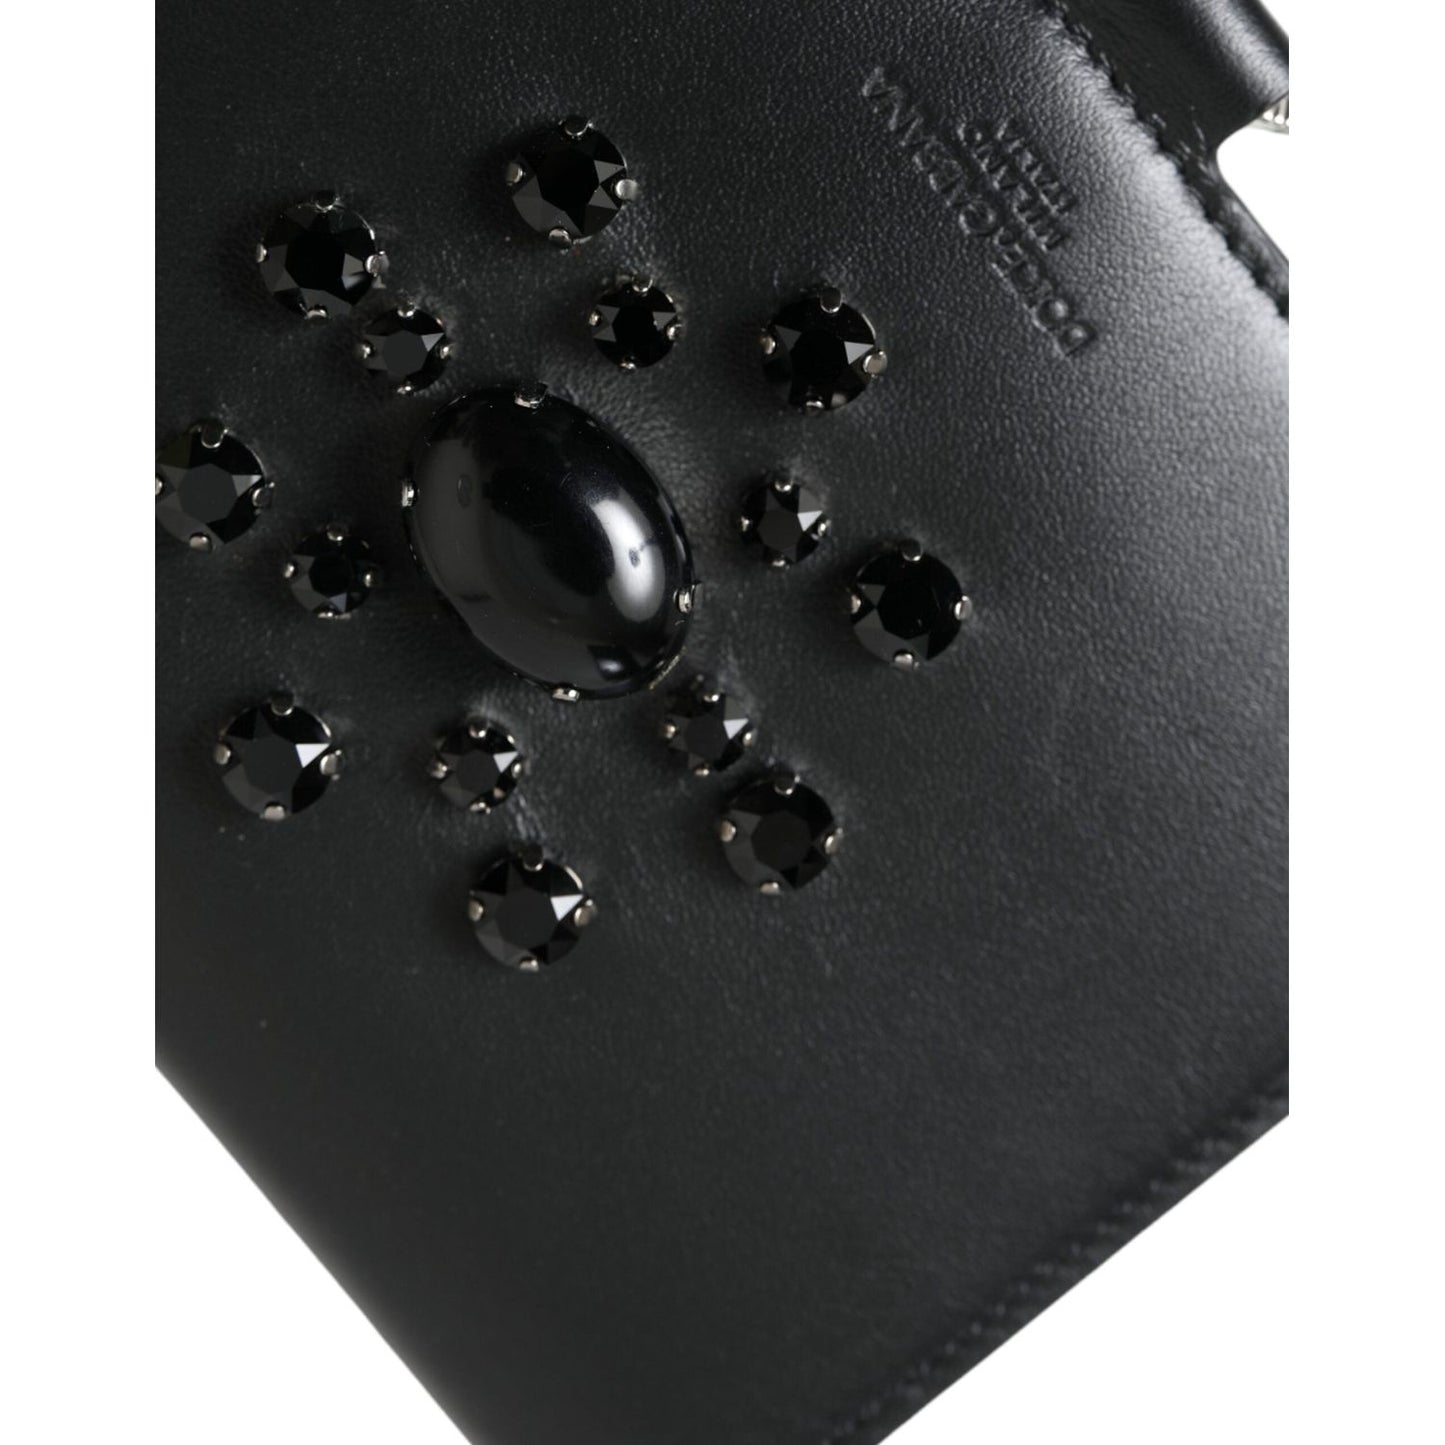 Dolce & Gabbana | Elegant Black Leather Crystal Card Holder Wallet| McRichard Designer Brands   